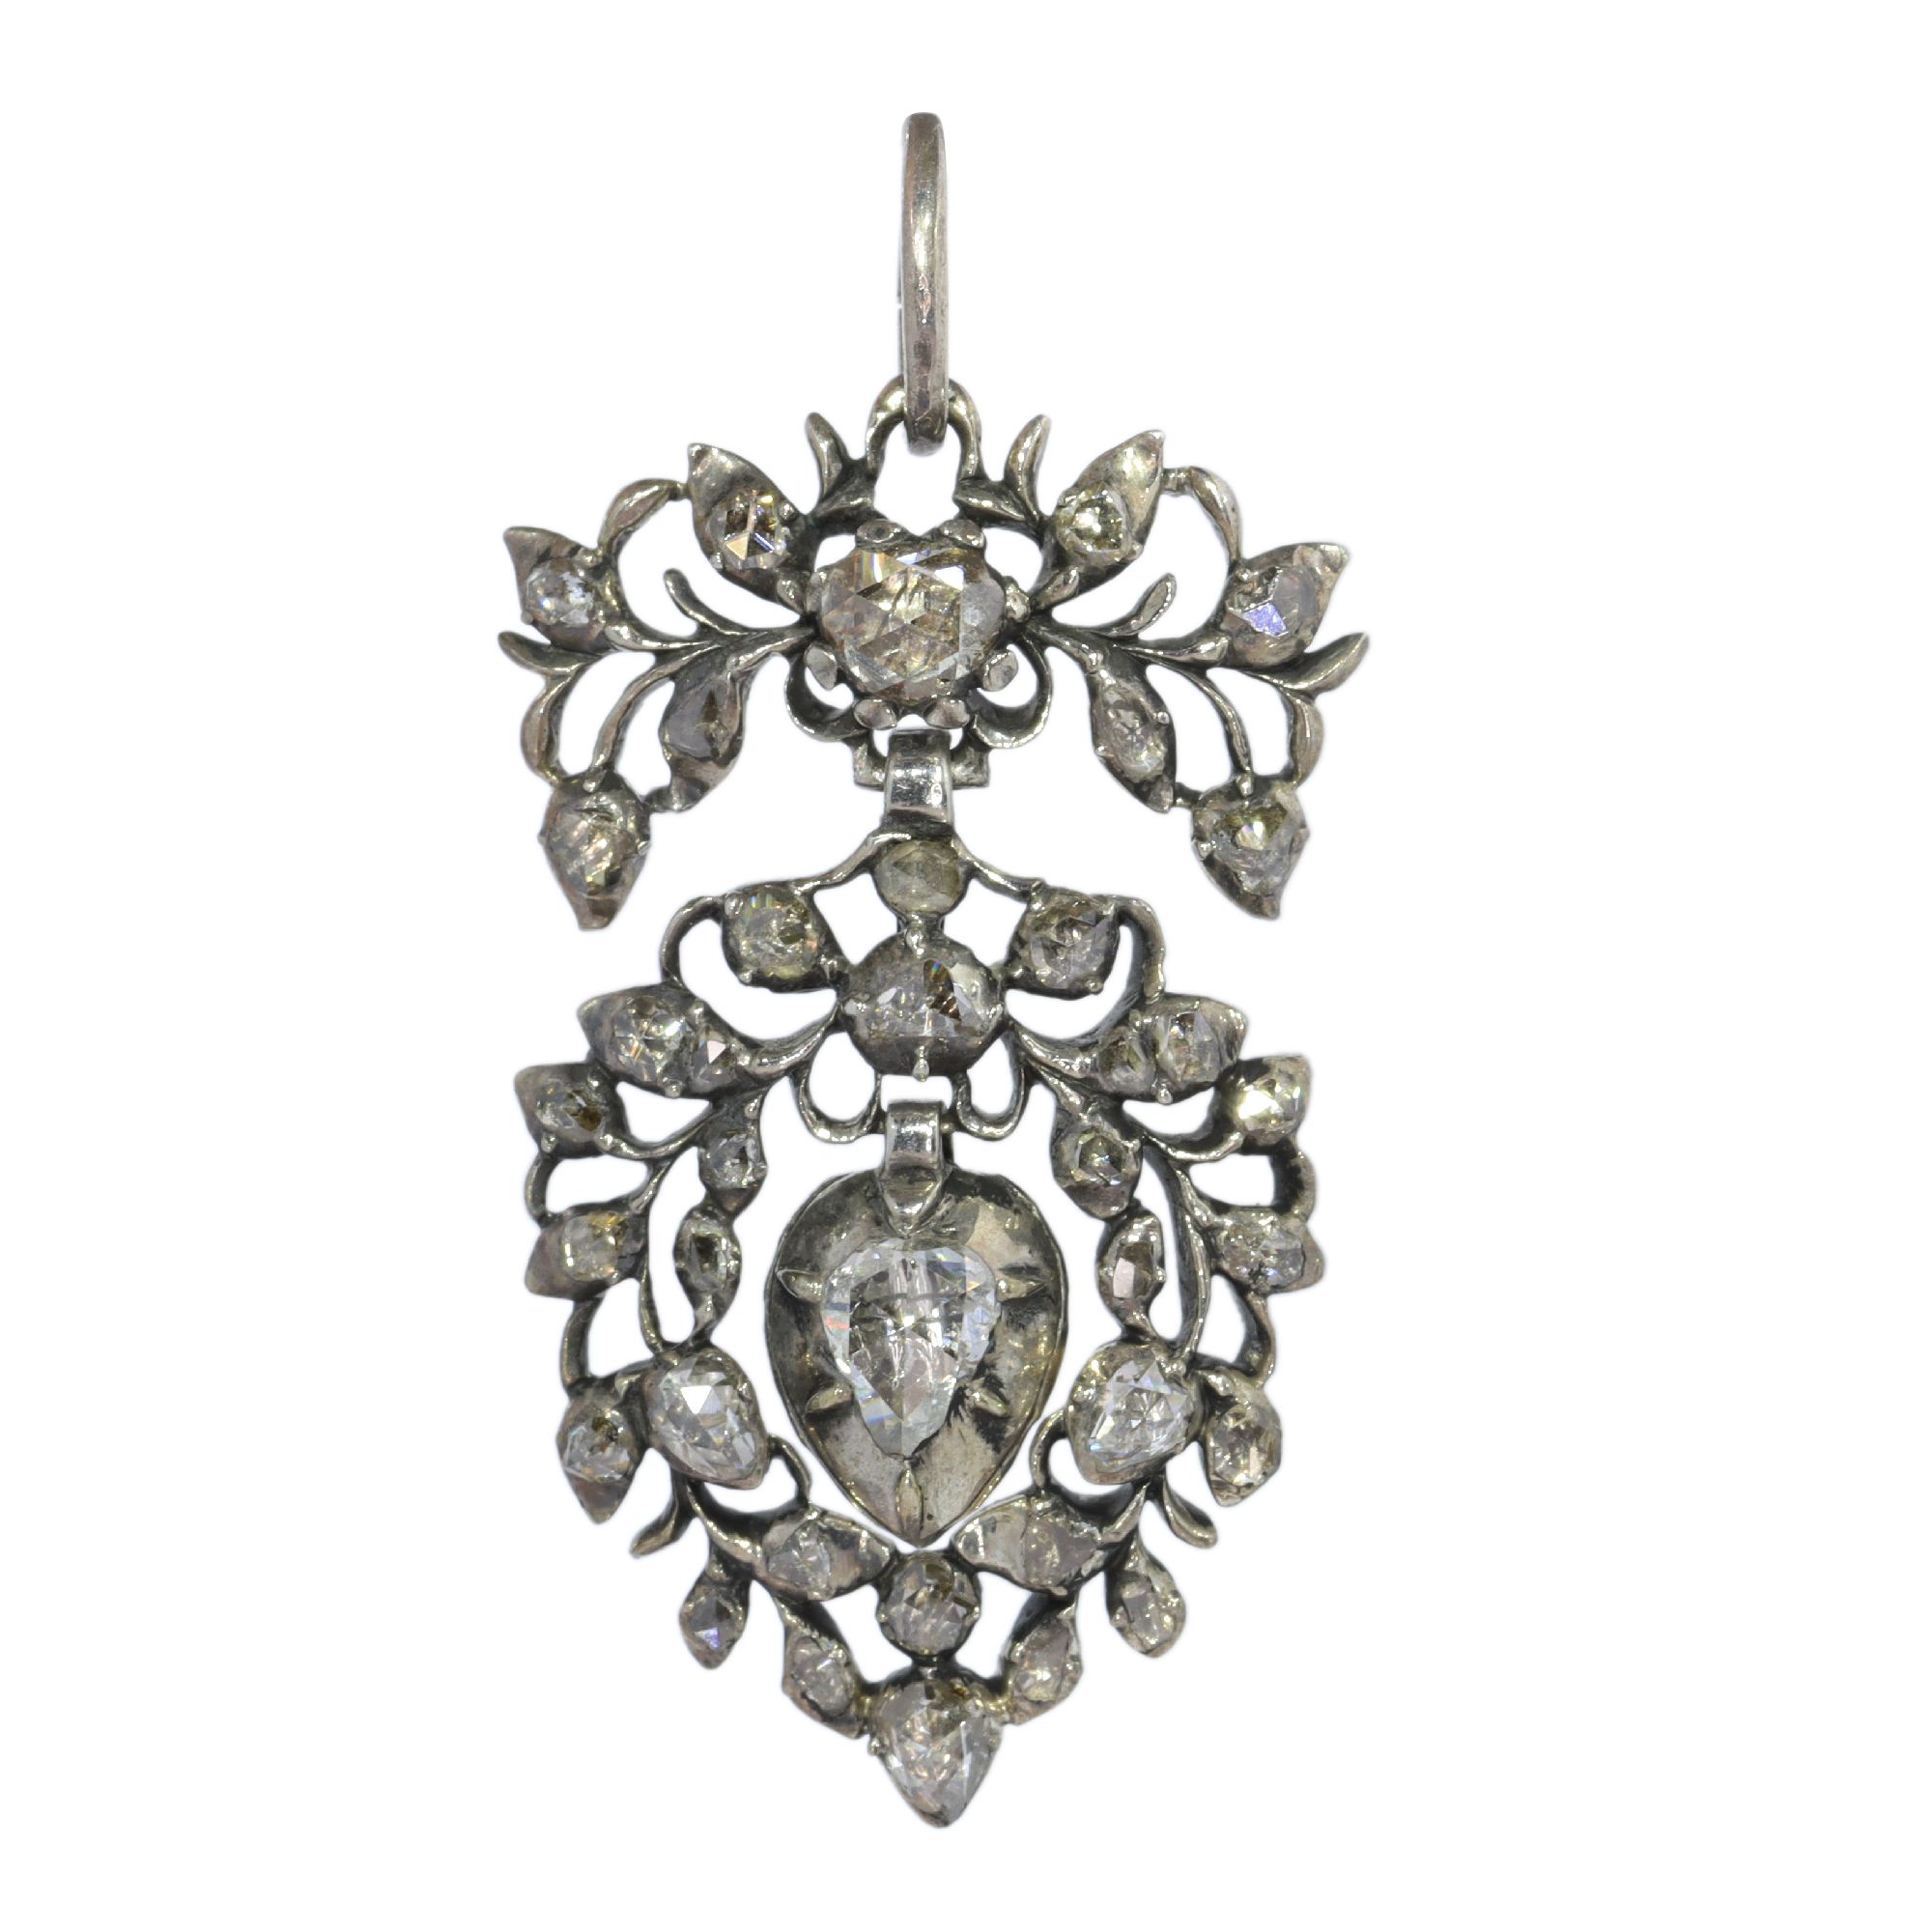 A Testament of Love: Flemish Rococo Diamond Pendant